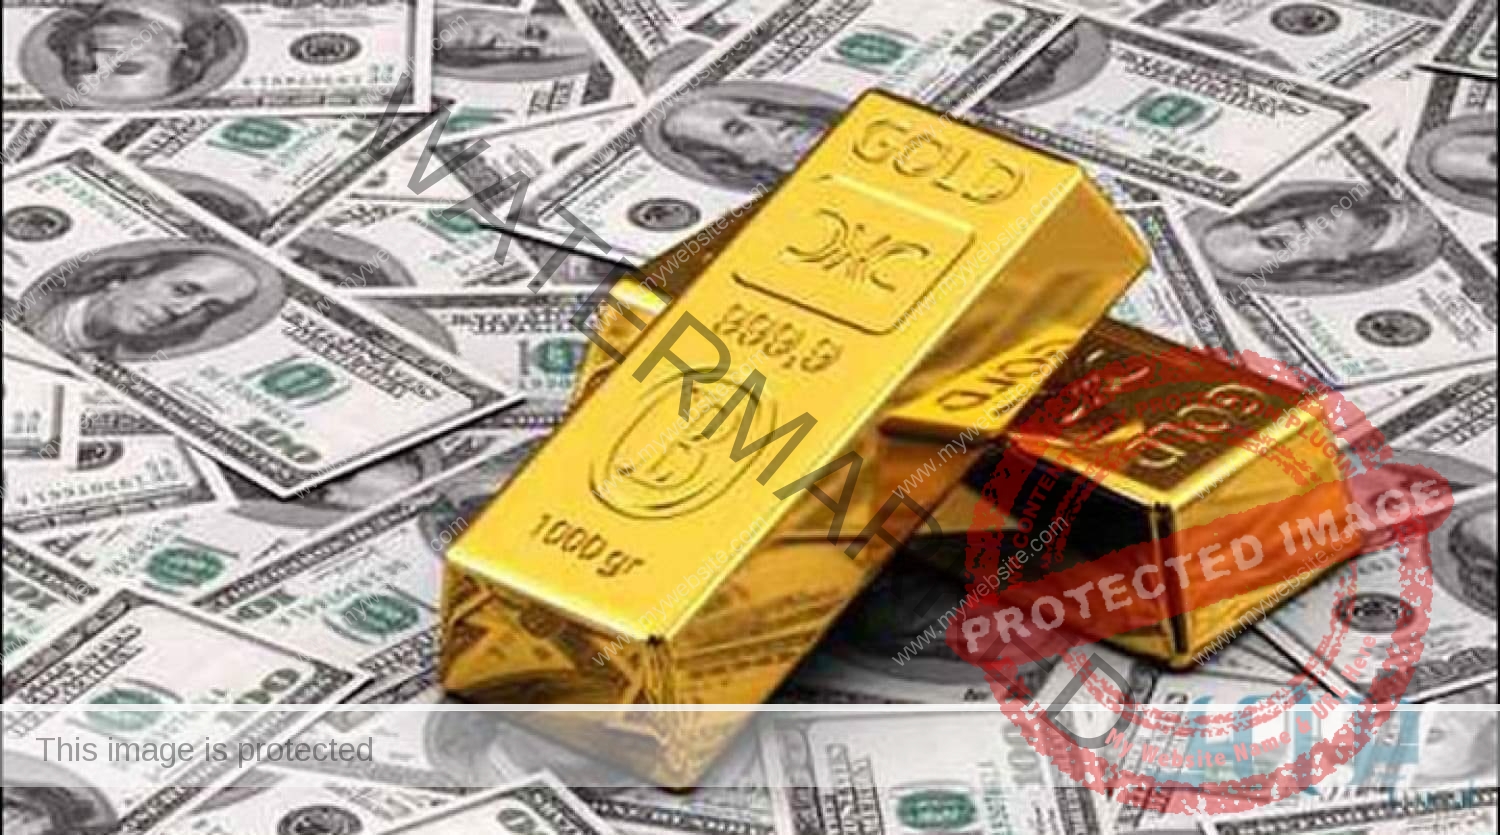 أسعار الذهب في ختام تعاملات اليوم الاثنين 5 أكتوبر 2020